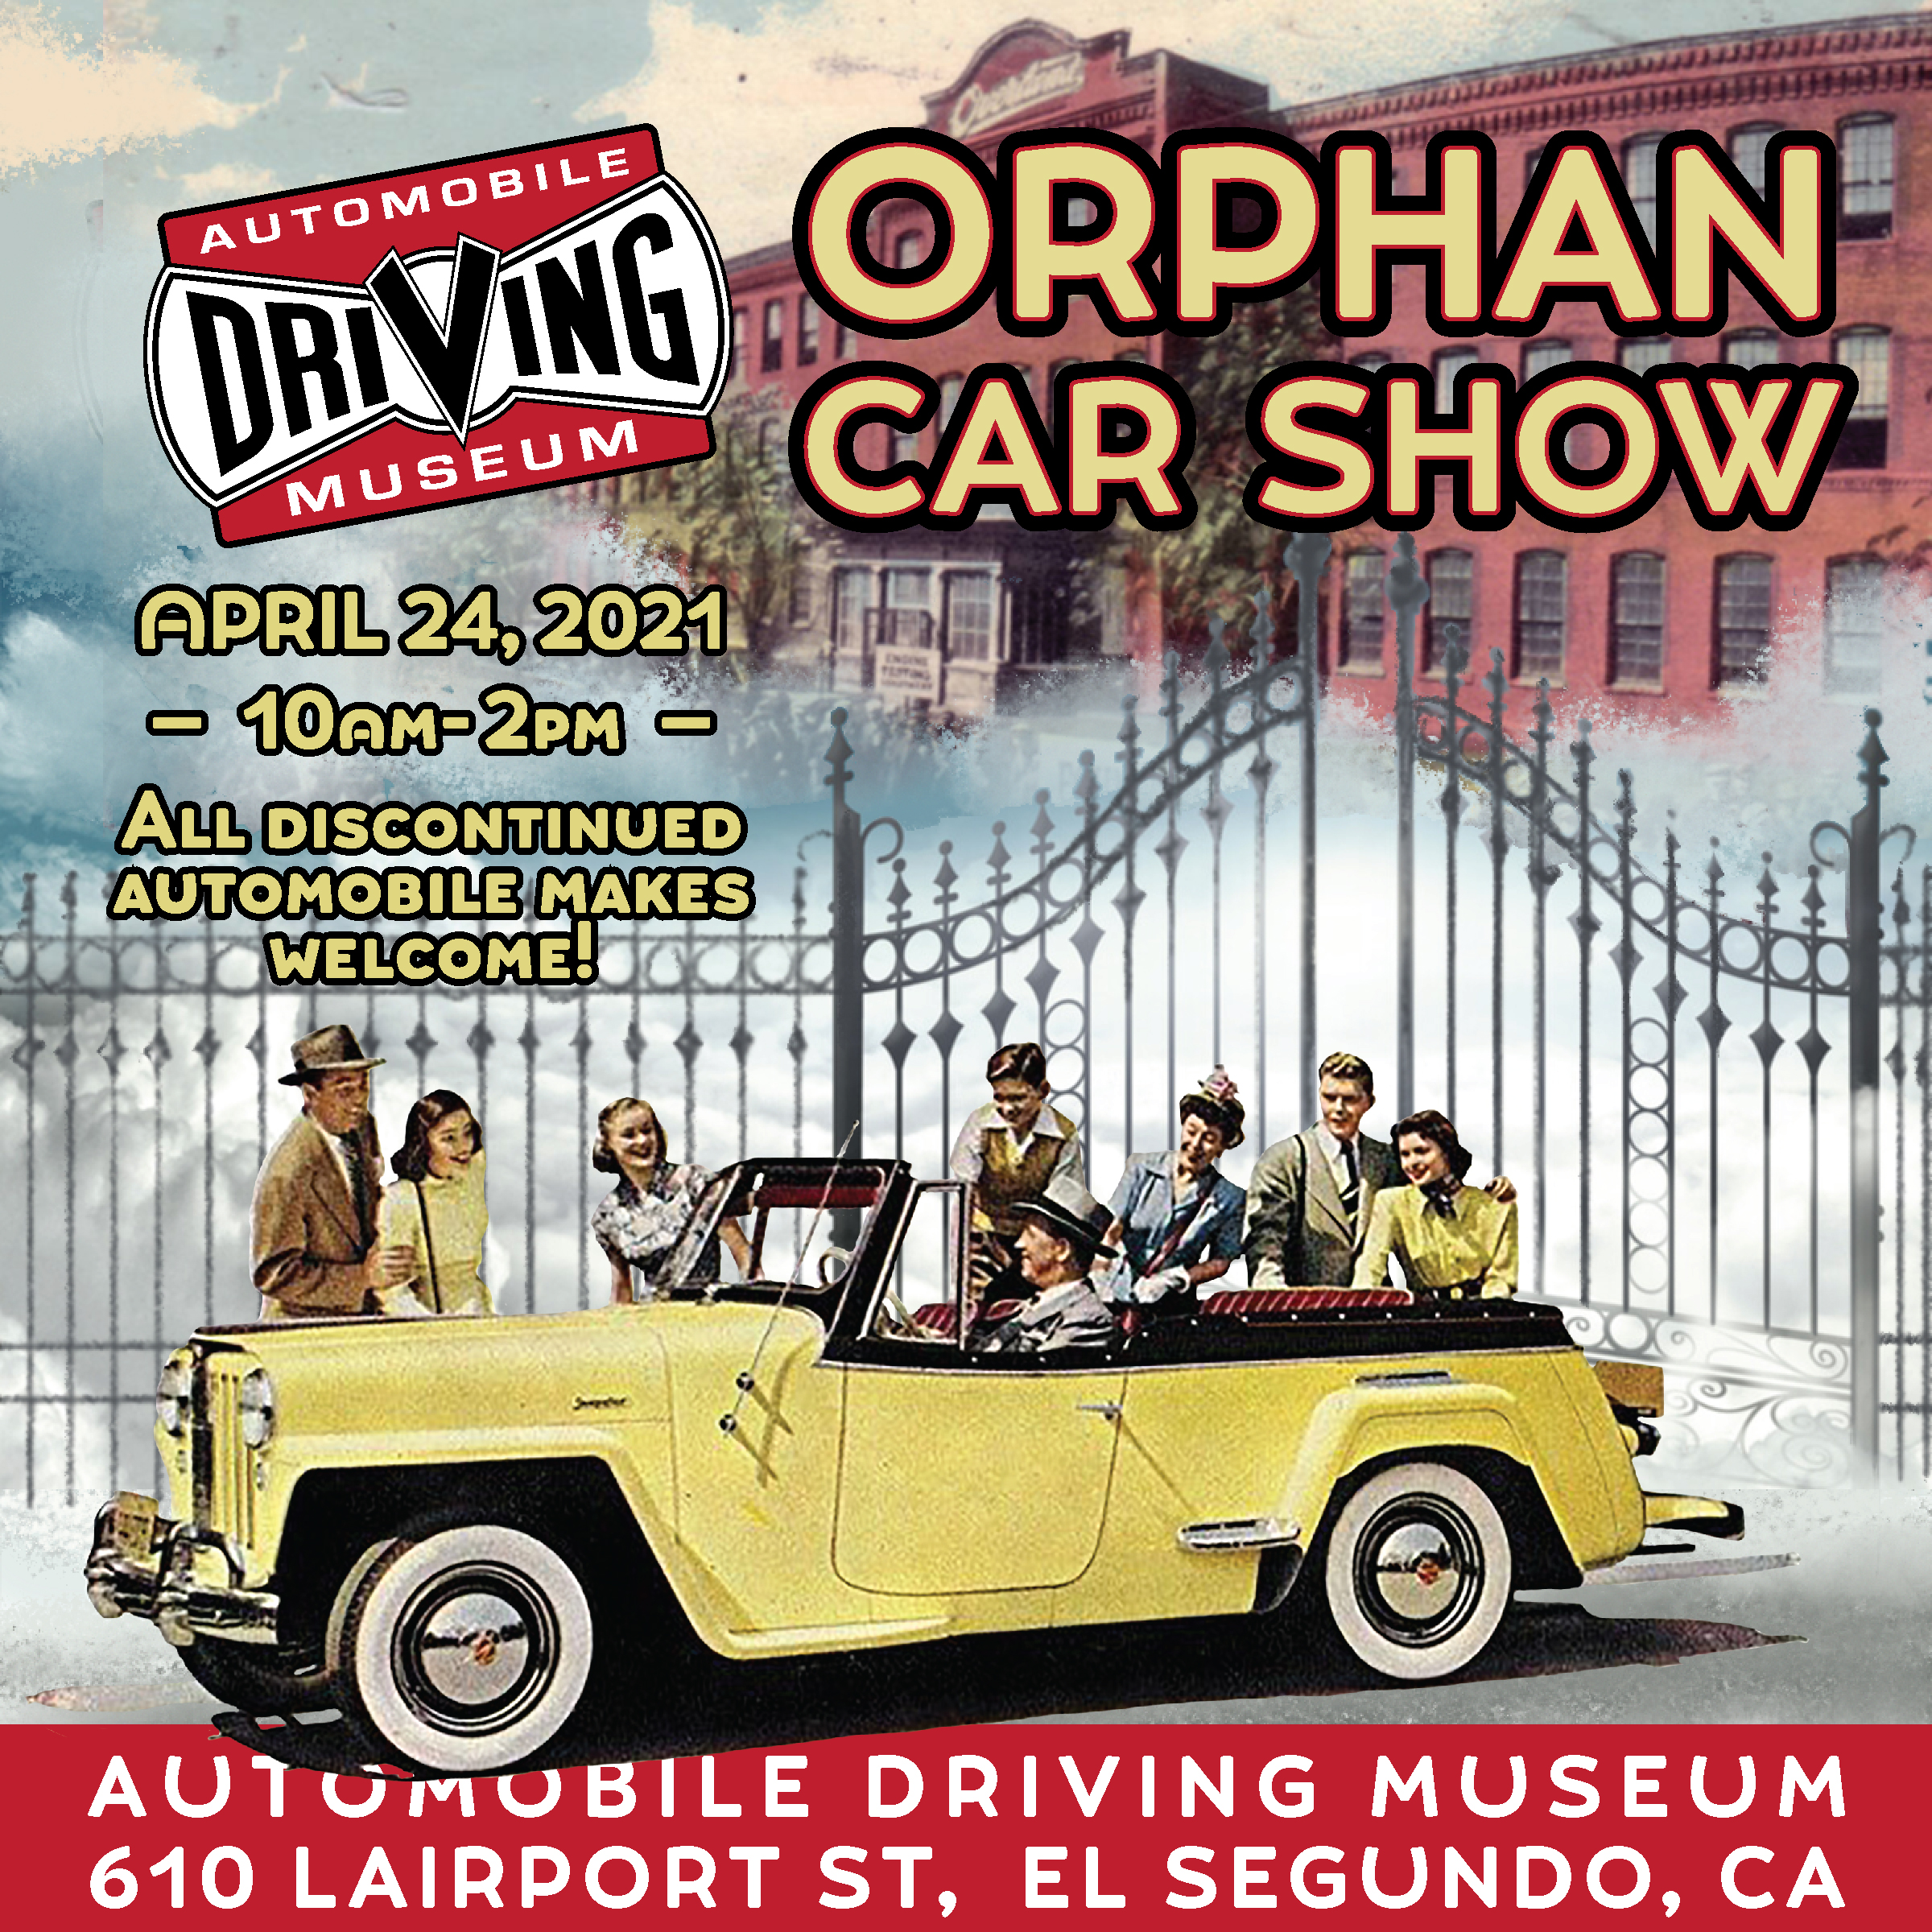 orphan car show in el segundo